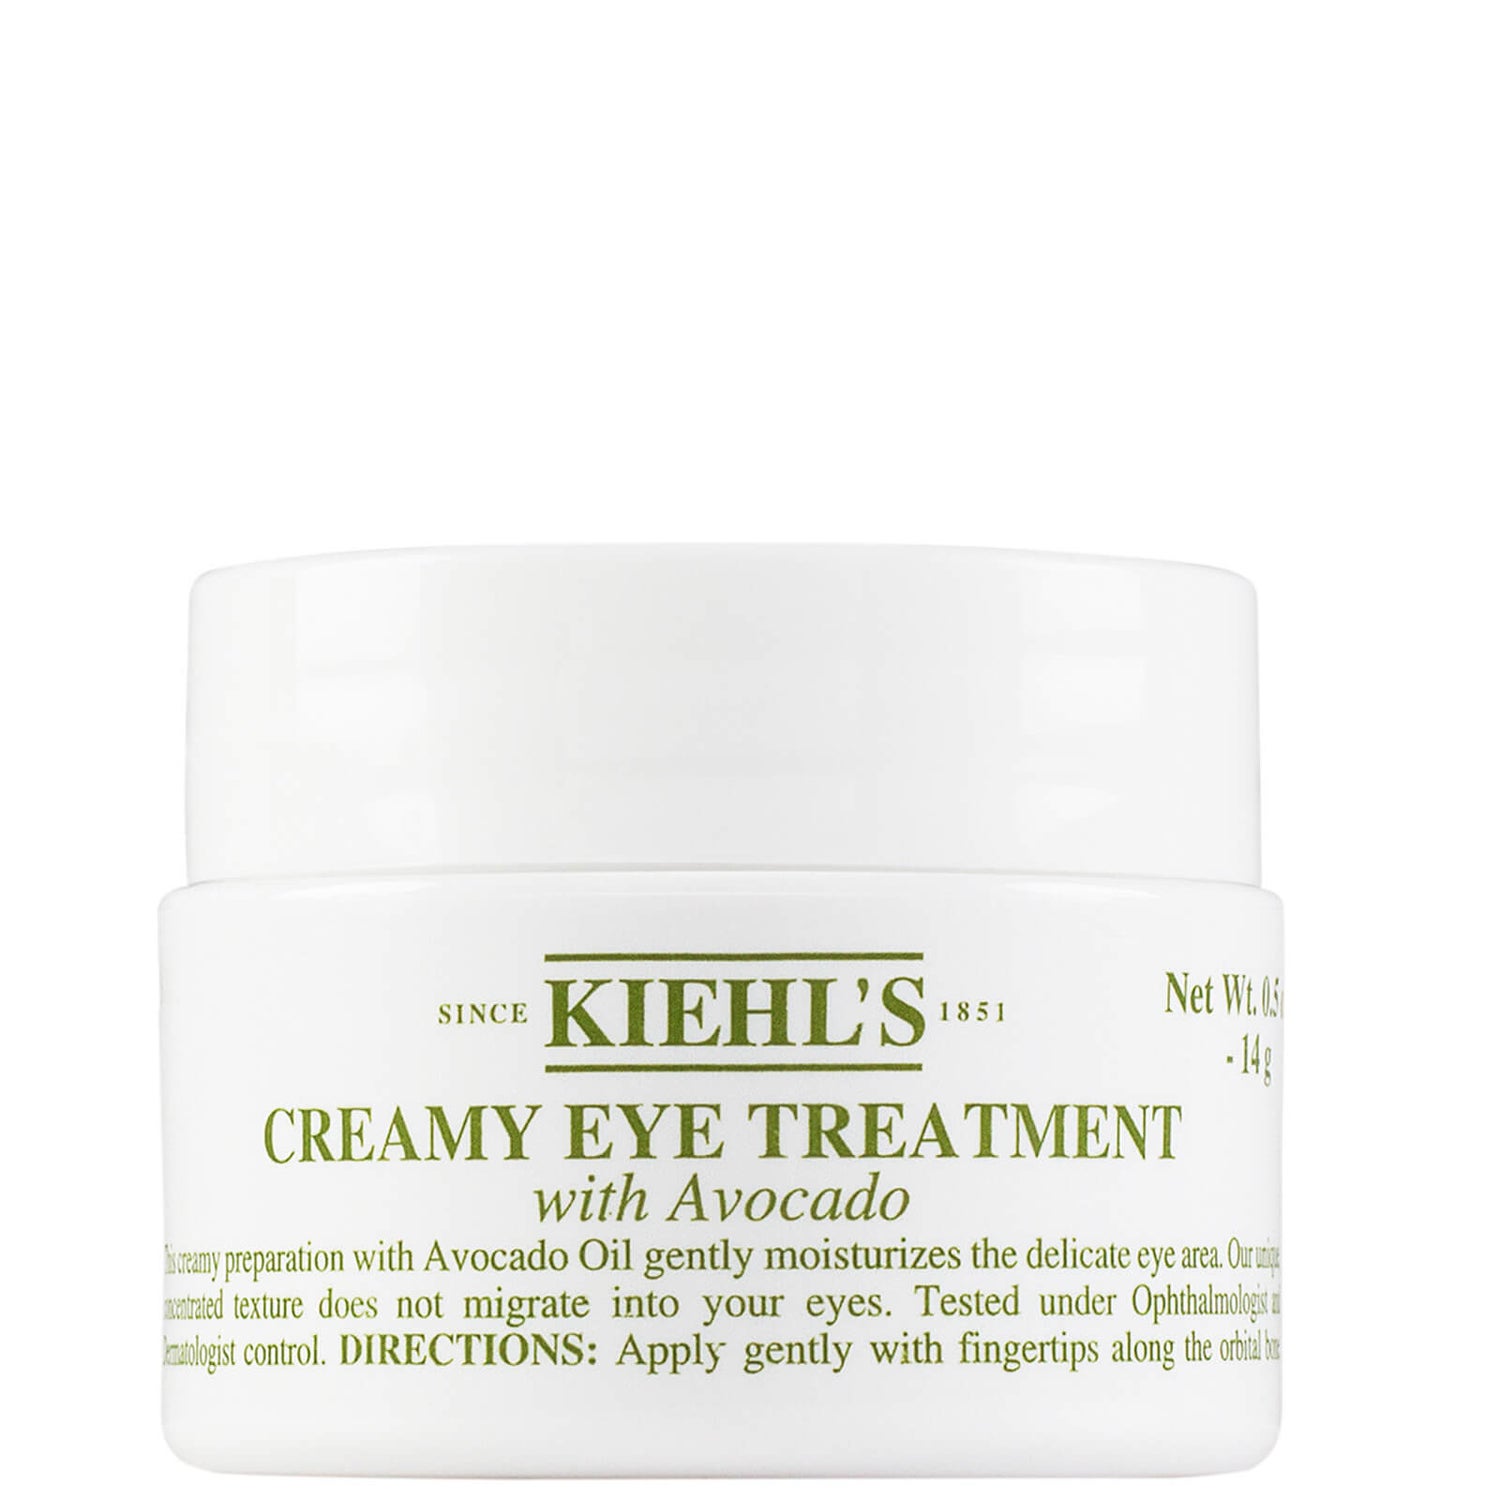 Kiehl's Creamy Eye Treatment with Avocado (Various Sizes)